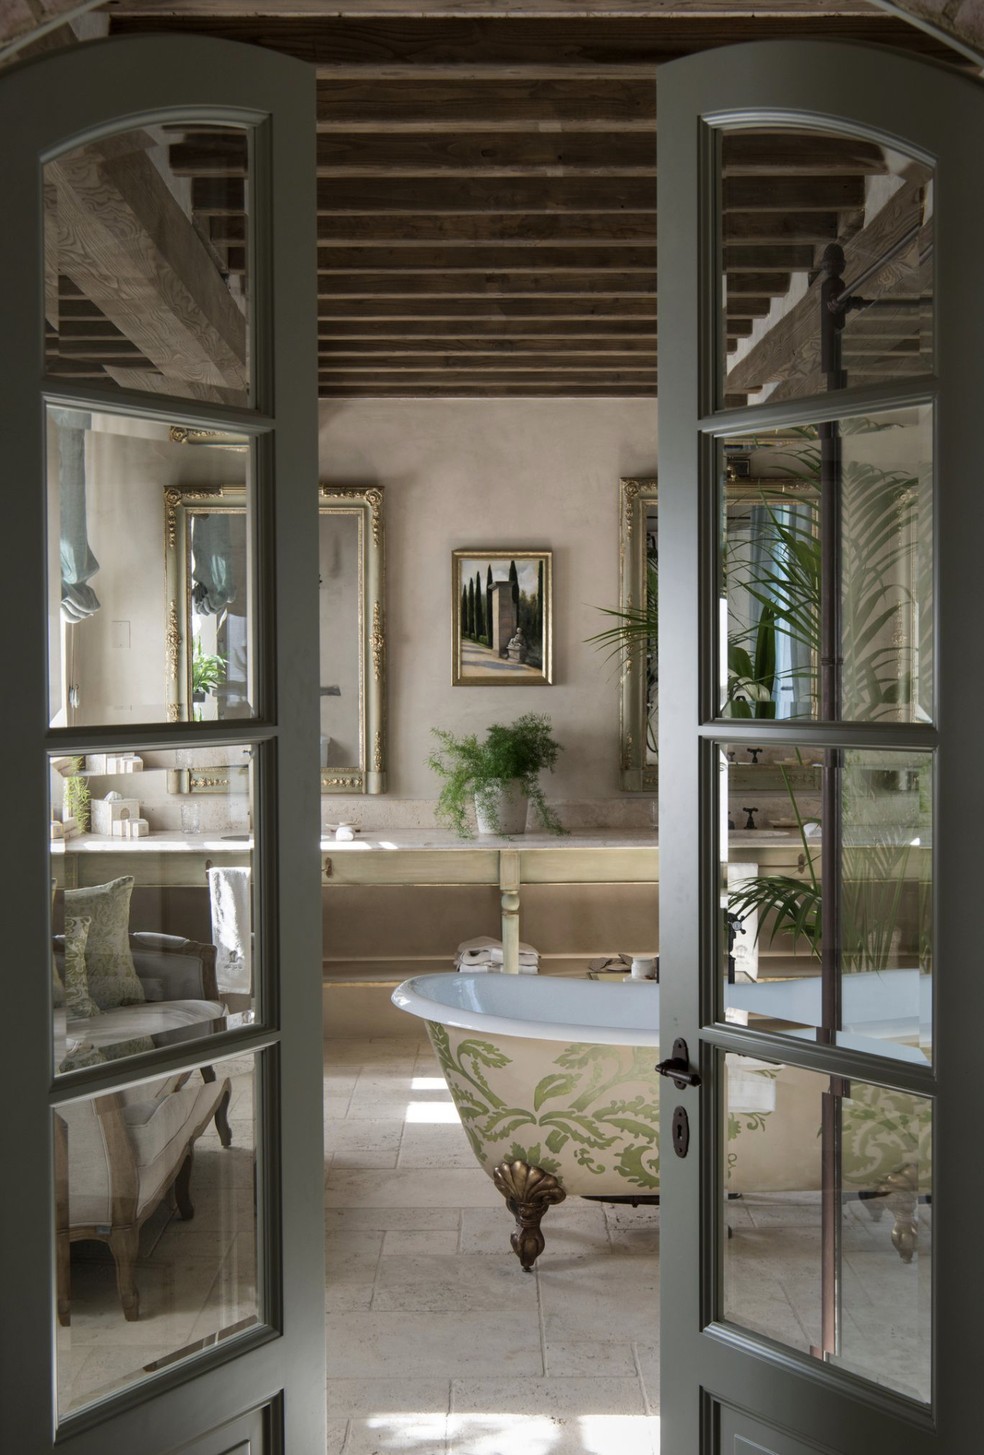 Banheiro do Borgo Santo Pietro Tuscany, Itália — Foto: Juliana A. Saad / Arquivo pessoal 